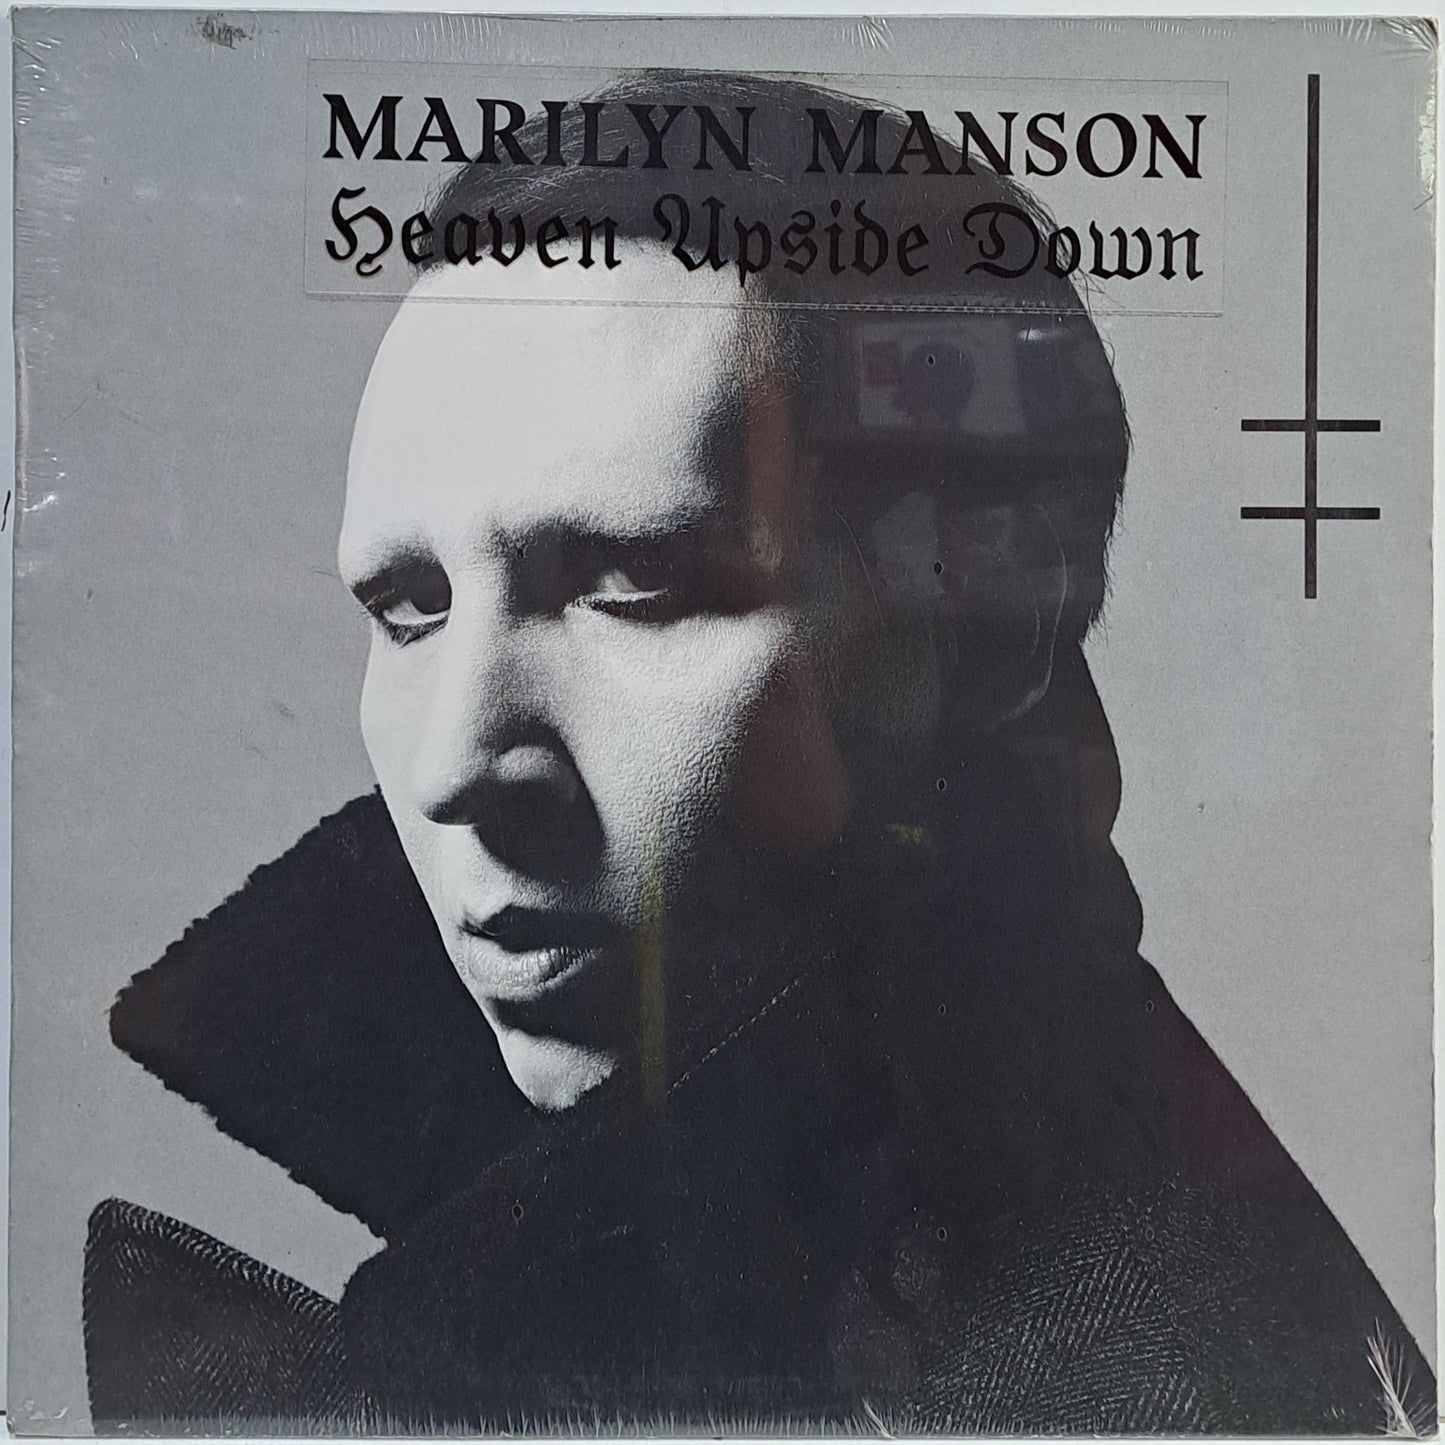 MARILYN MANSON - HEAVEN UPSIDE DOWN  LP